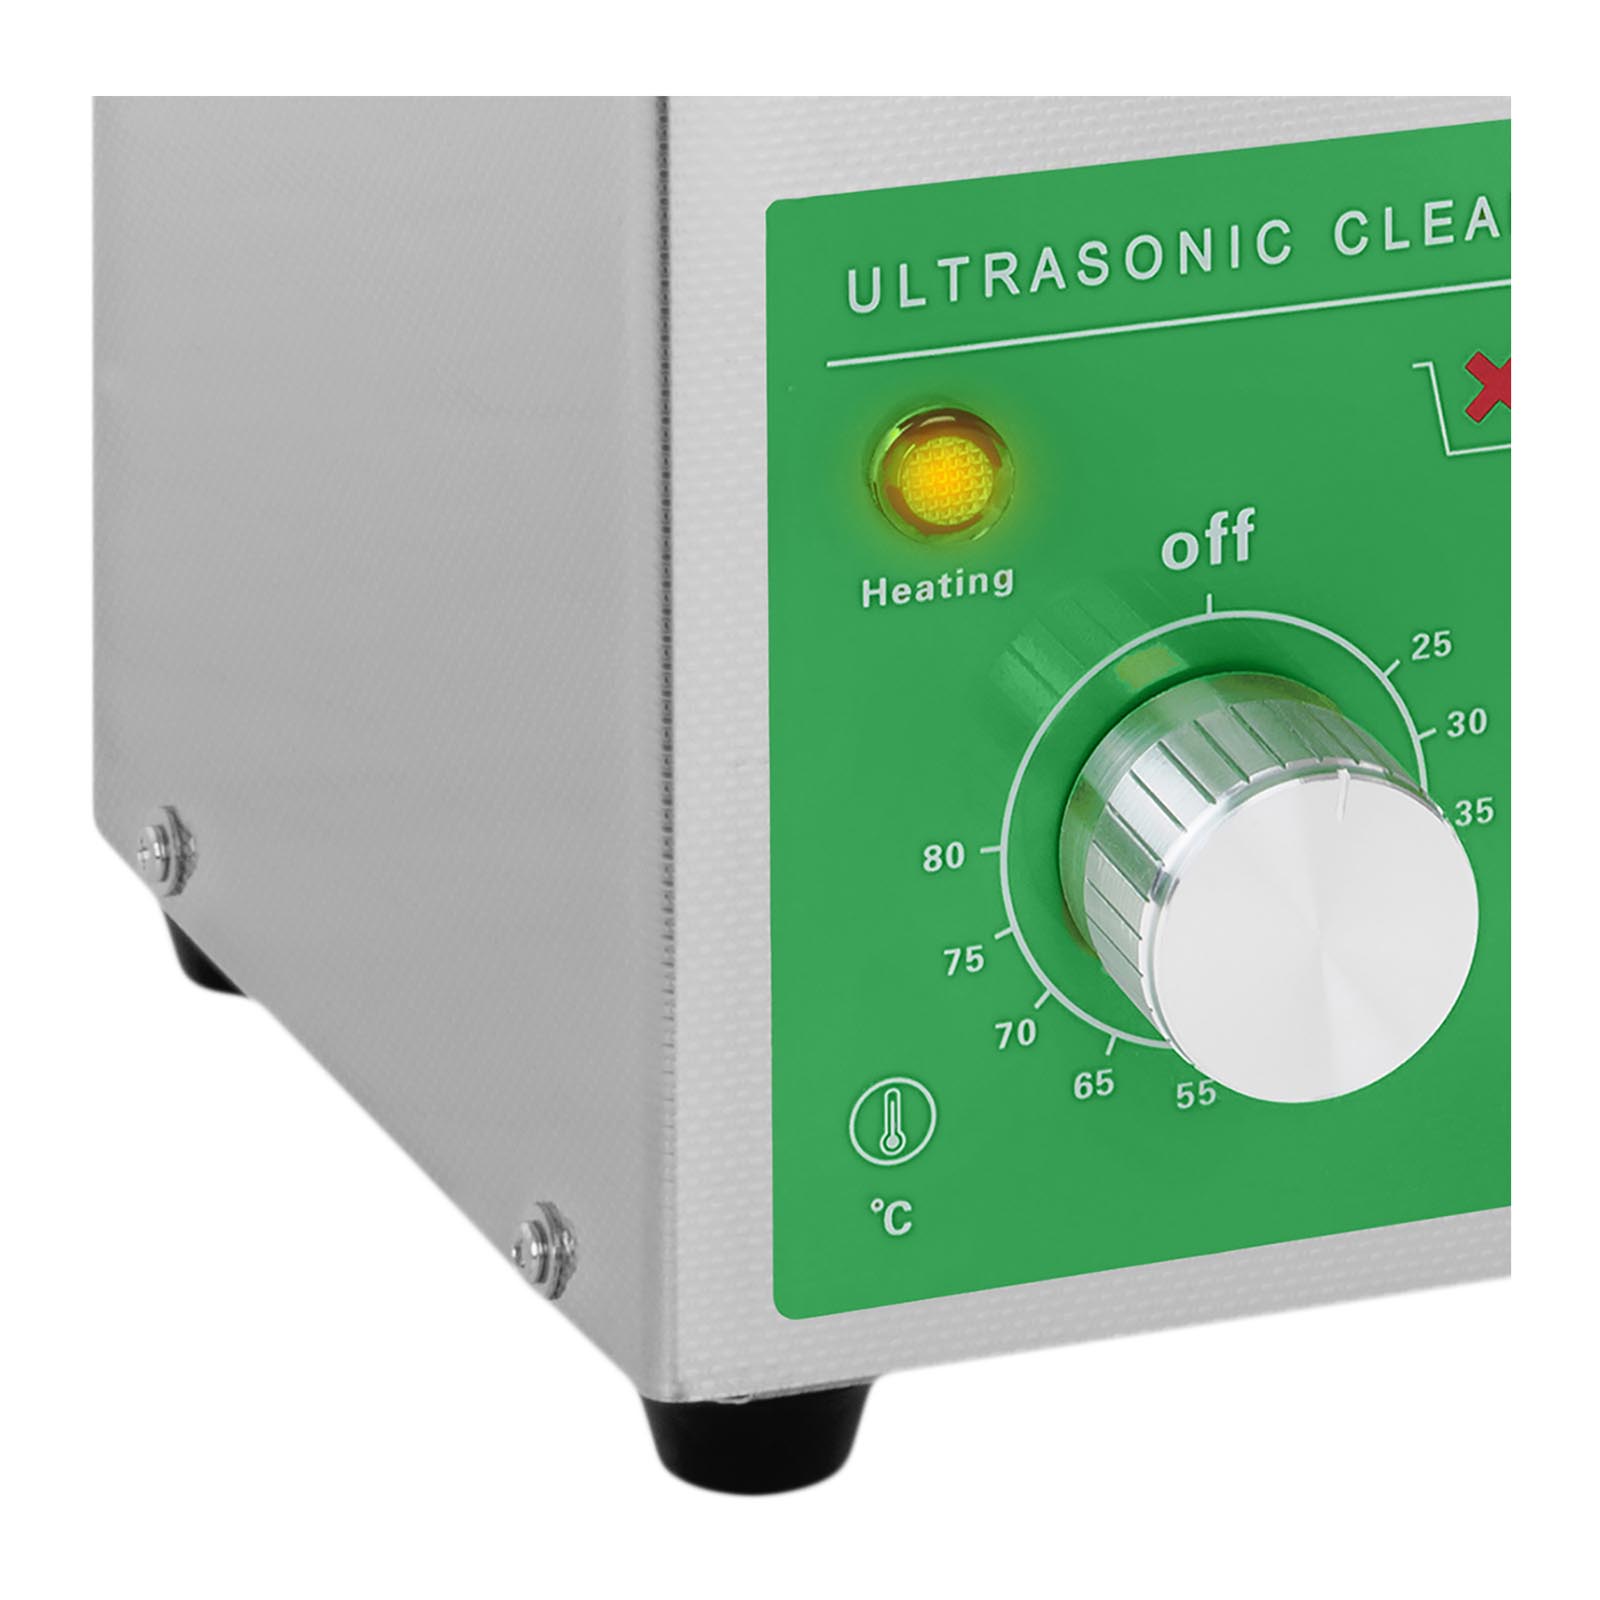 Ultrazvočni čistilec - 2 litra - 60 W - Basic Eco